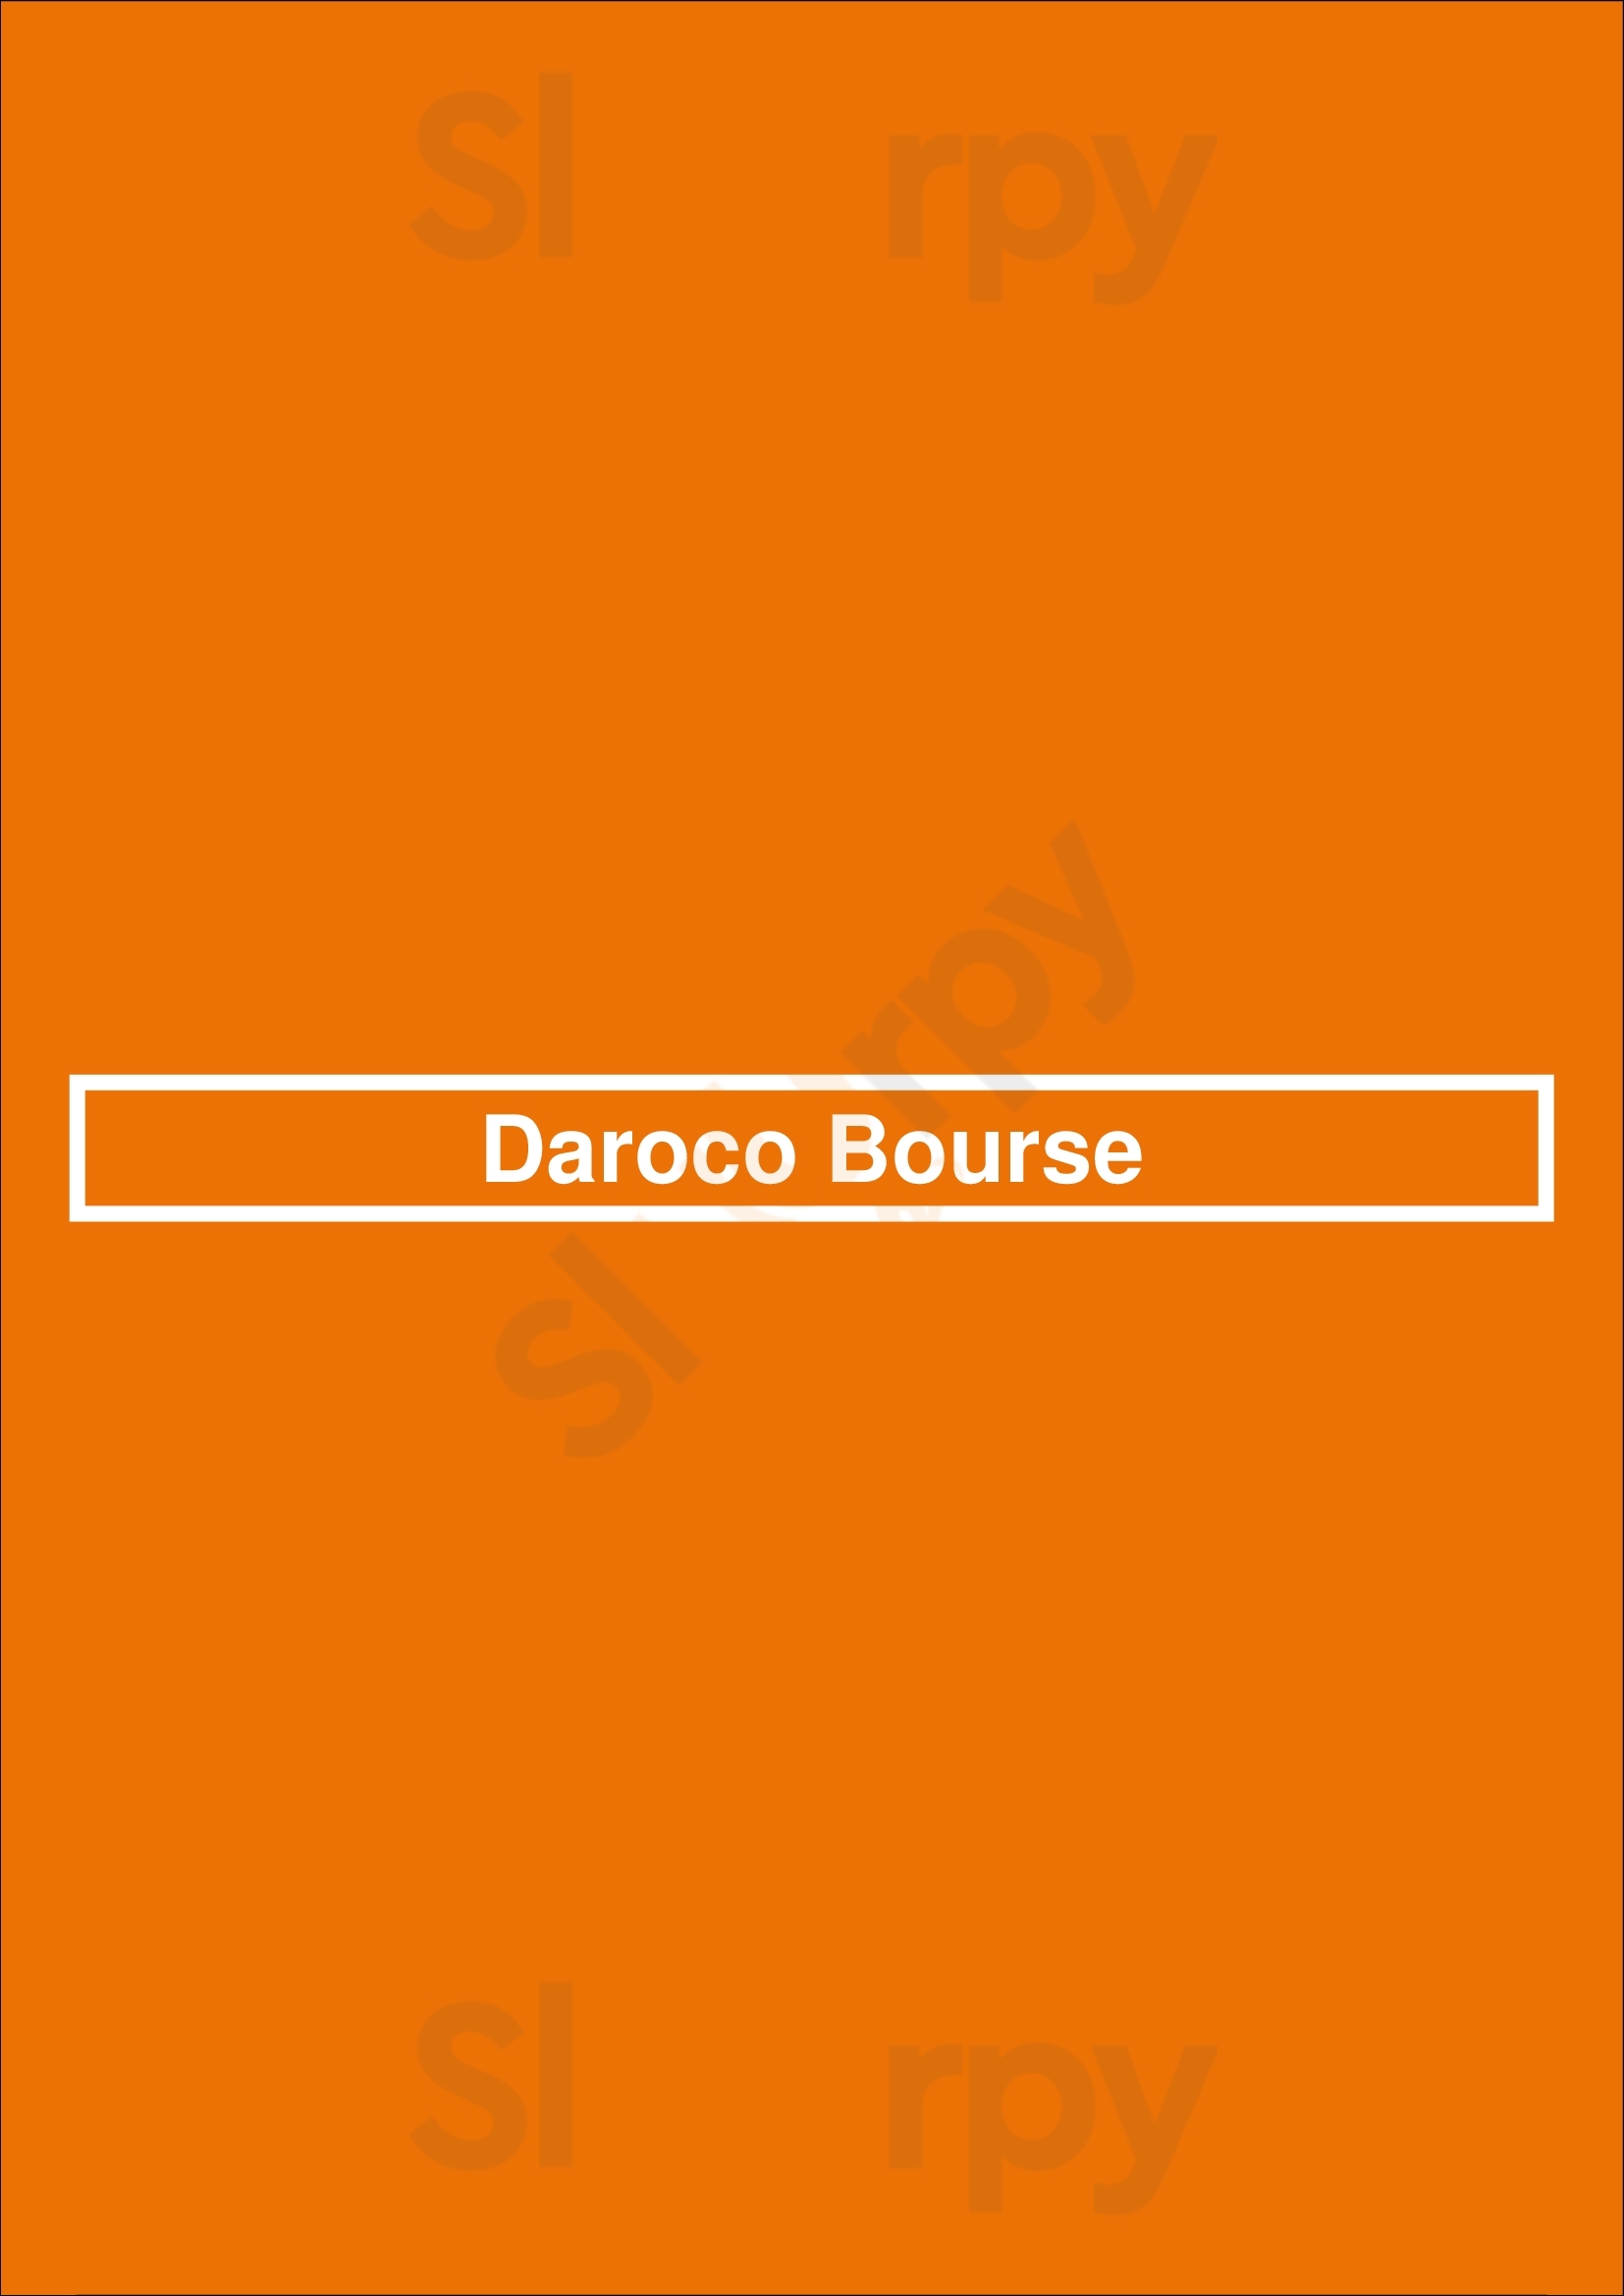 Daroco Bourse Paris Menu - 1